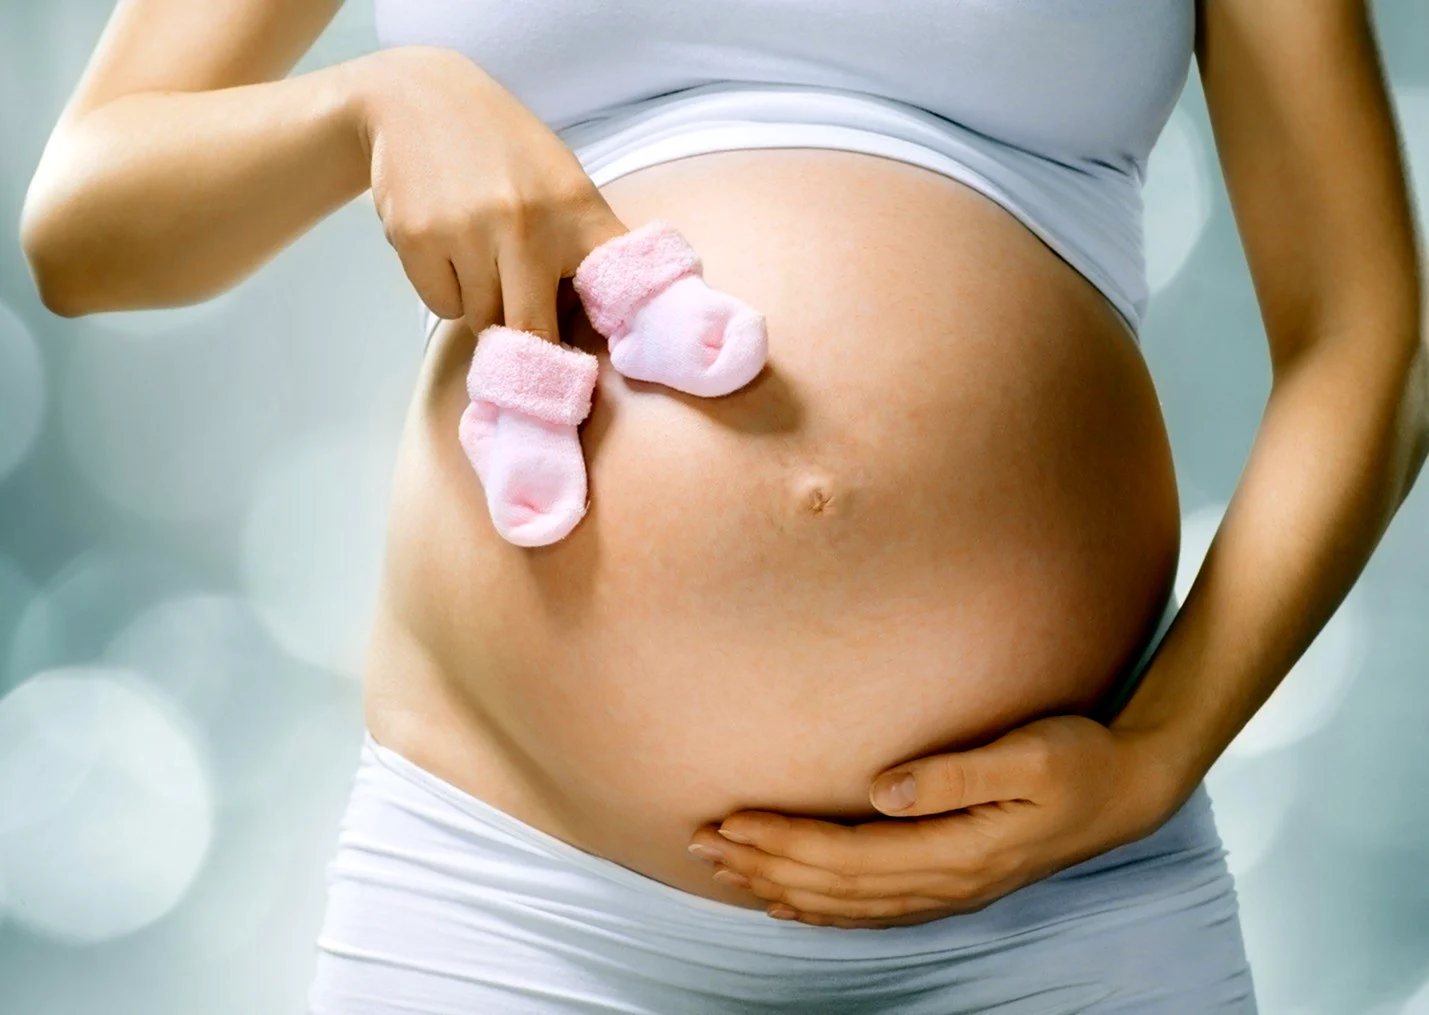 Причина пищевых капризов беременных: это не потому, что их организму чего-то не хватает